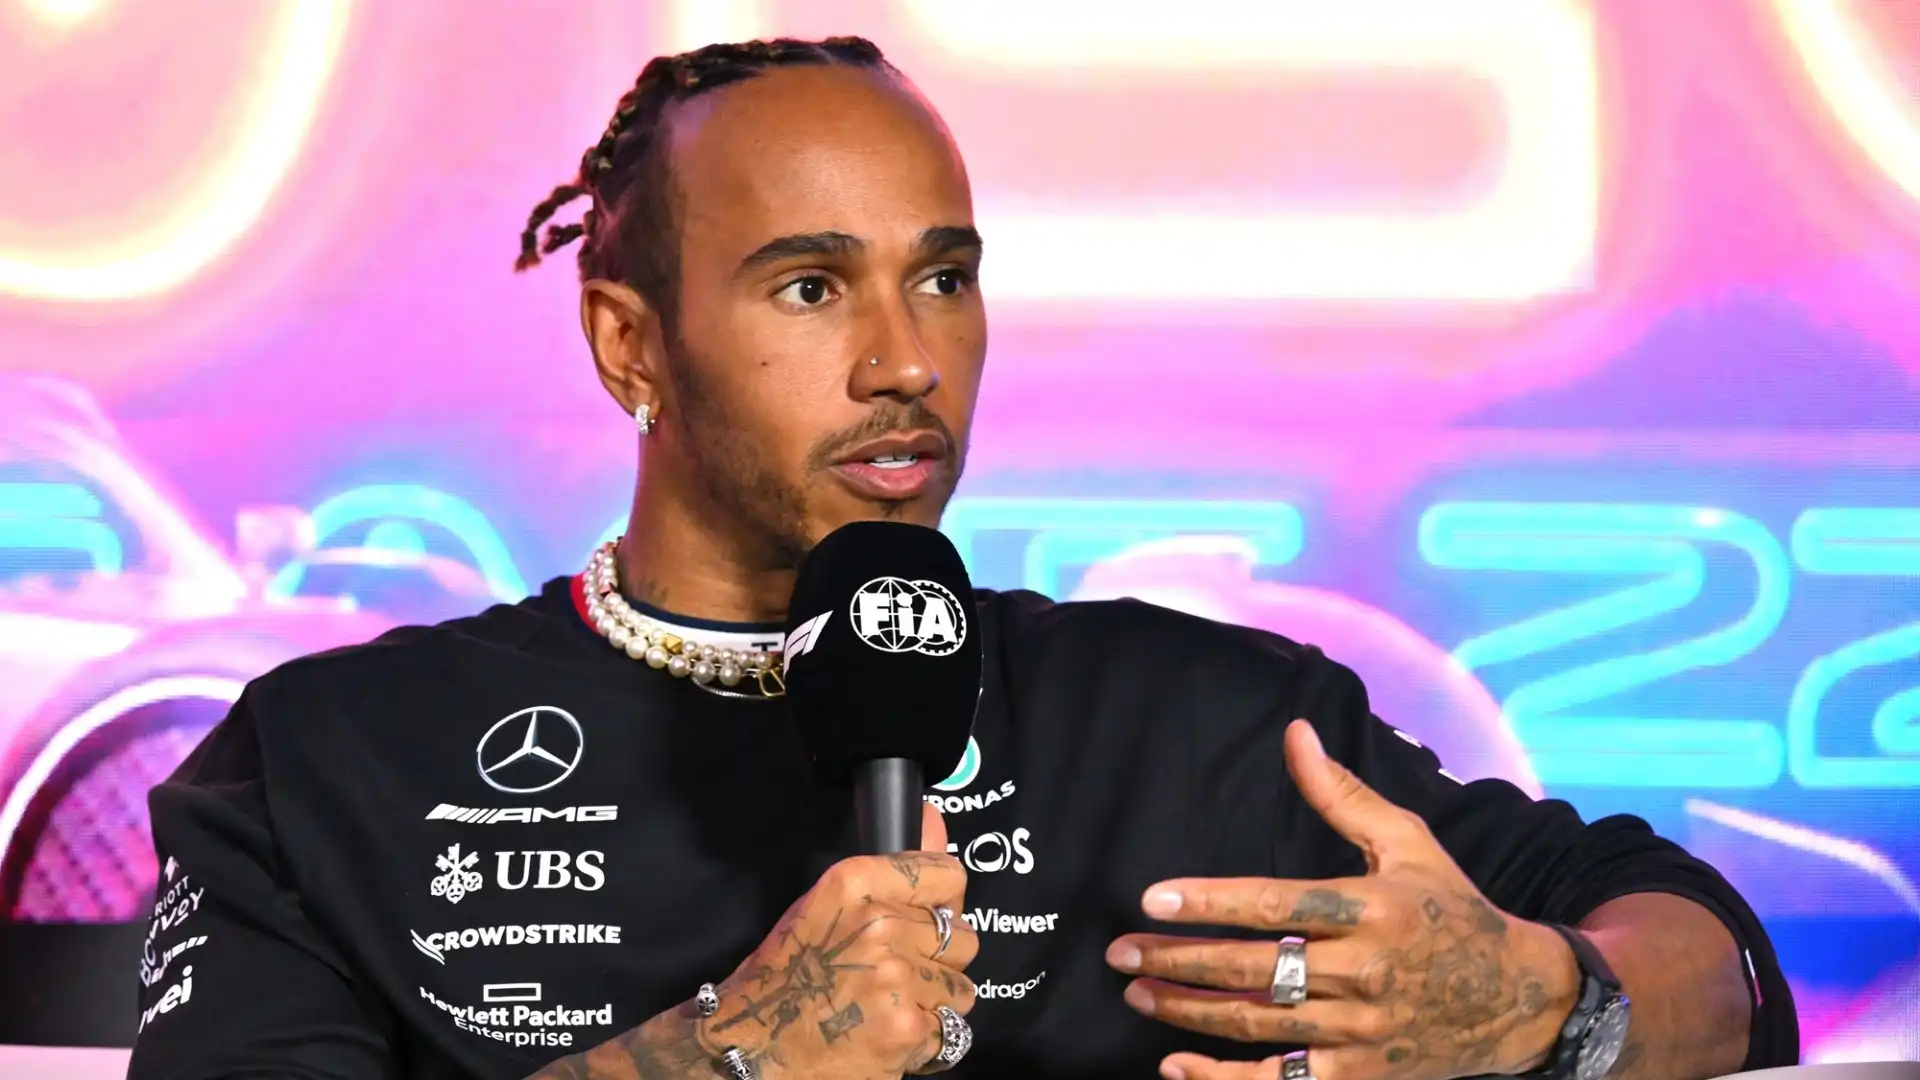 Lewis Hamilton è tornato a chiedere provvedimenti per limitare il dominio di un team rispetto agli altri in Formula 1